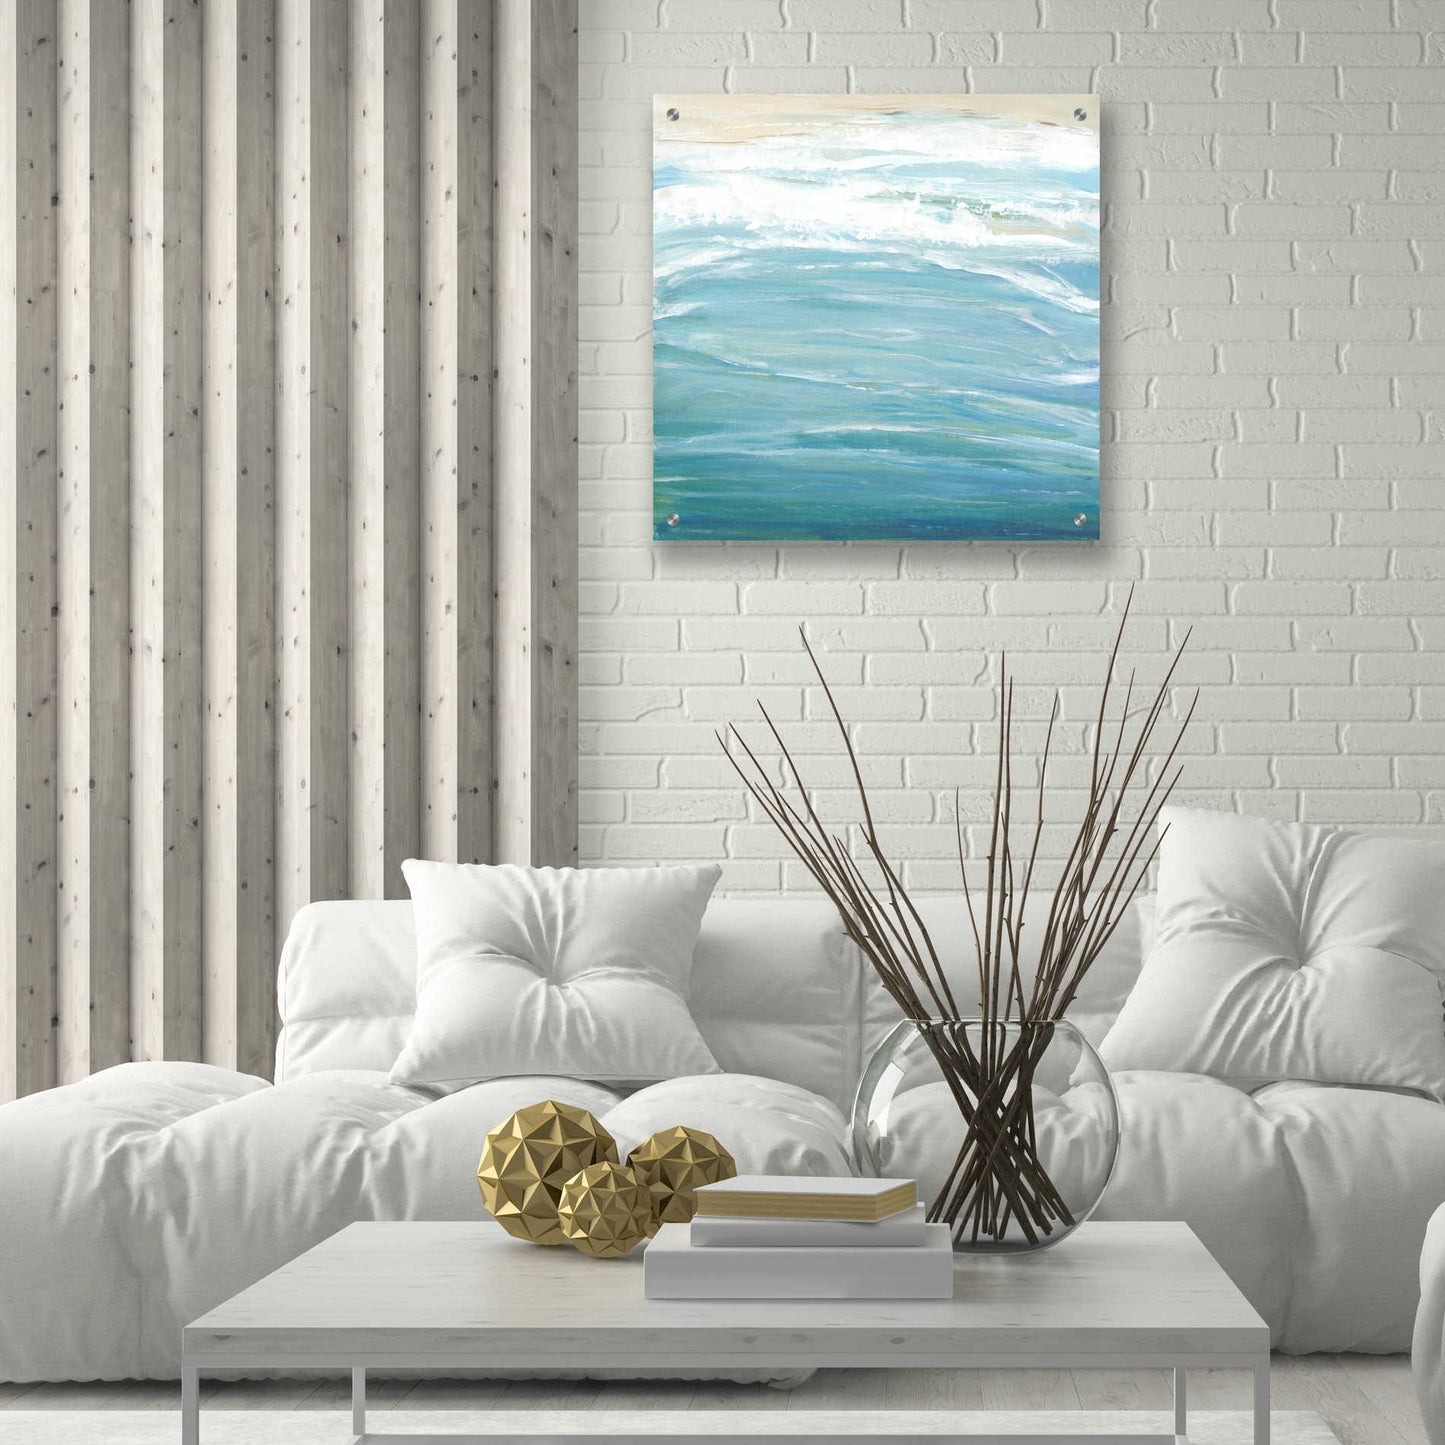 Epic Art 'Sea Breeze Coast II' by Tim O'Toole, Acrylic Glass Wall Art,24x24